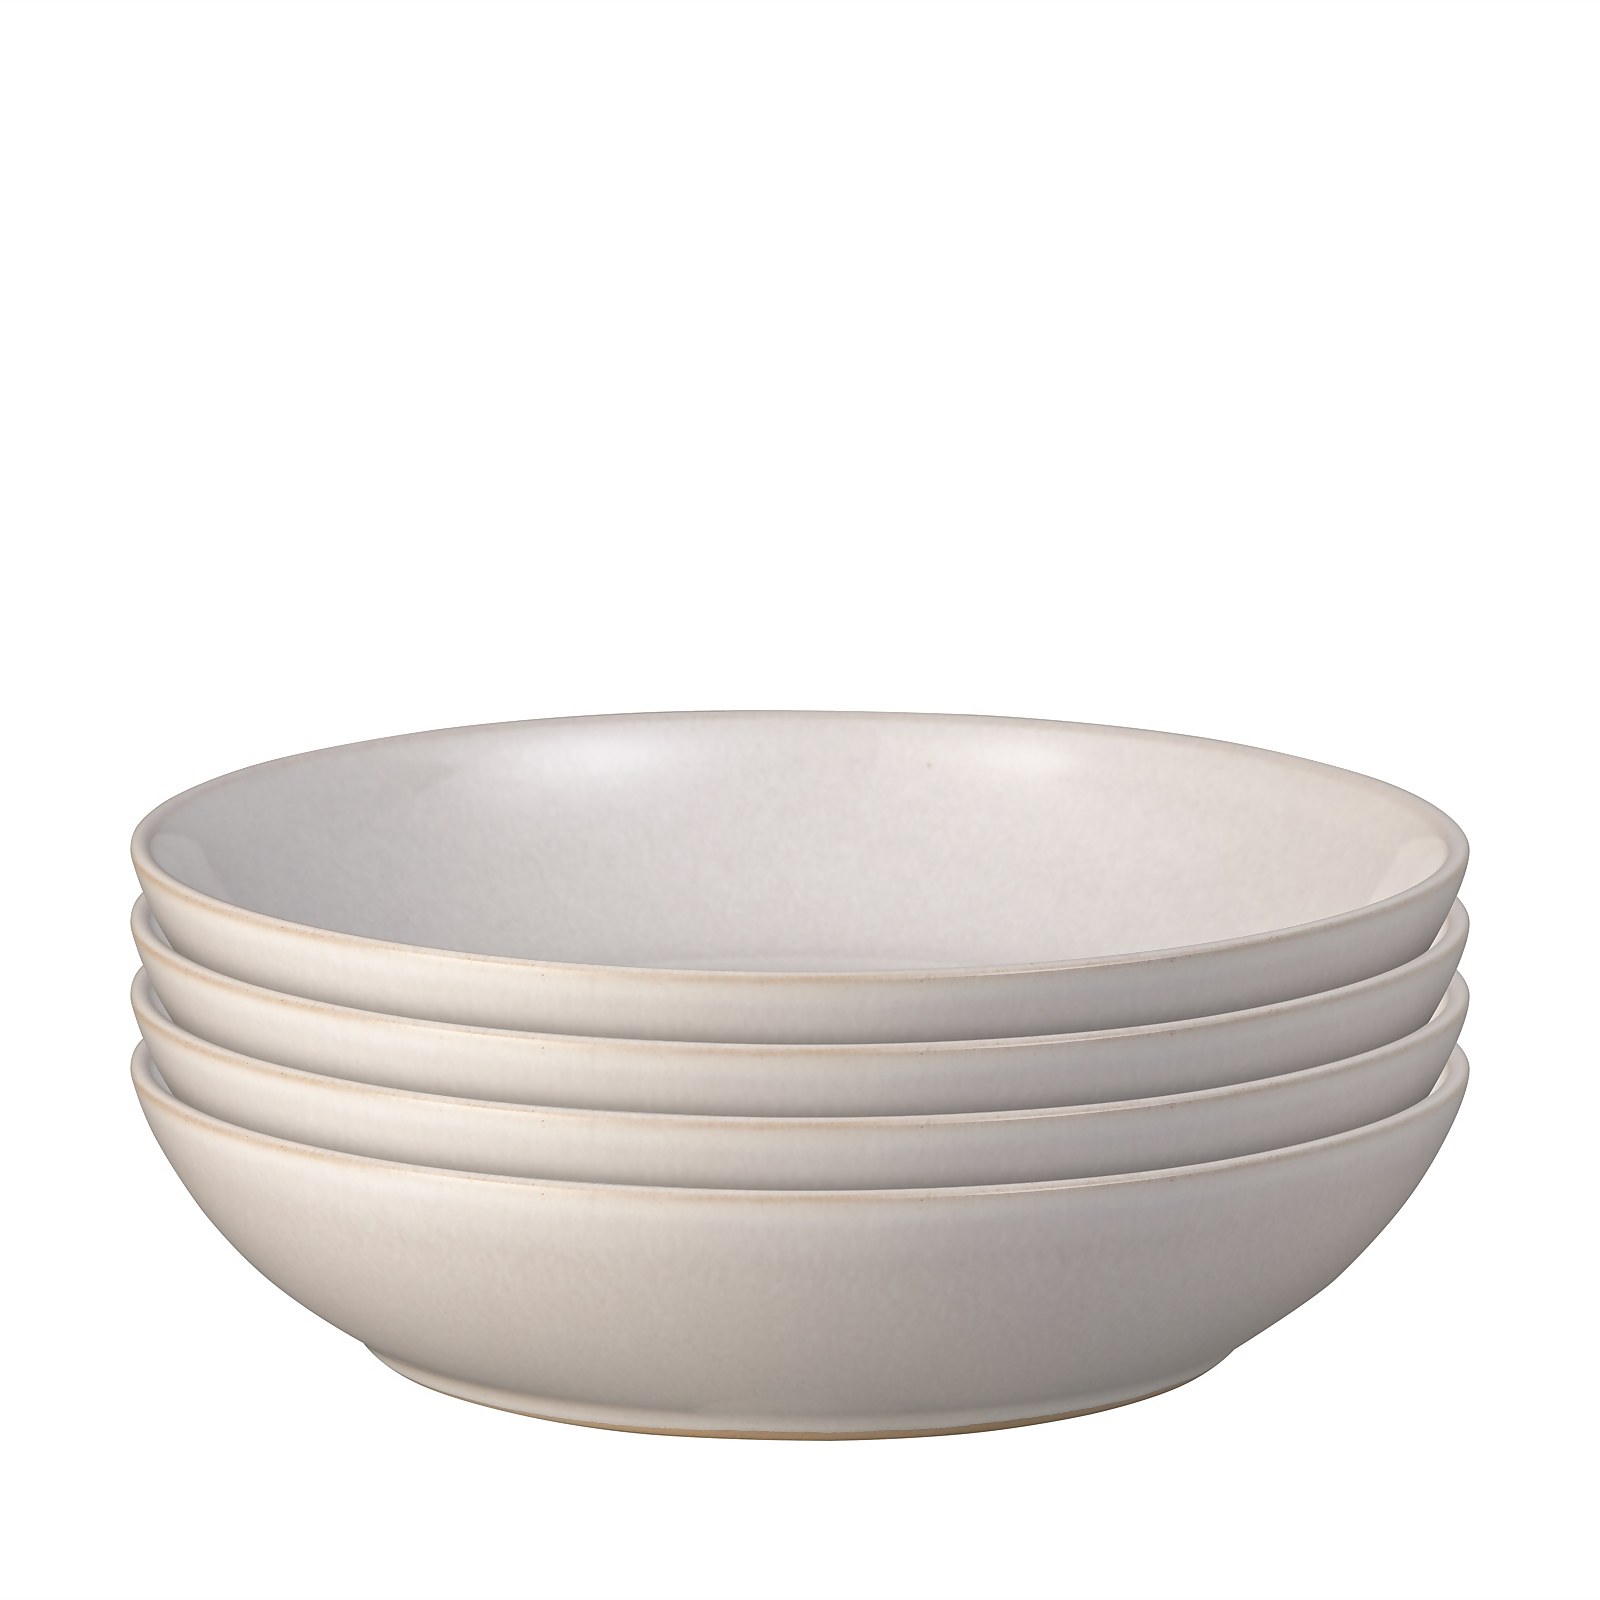 Photo of Intro Pasta Bowls - Stone White - 4 Piece Set